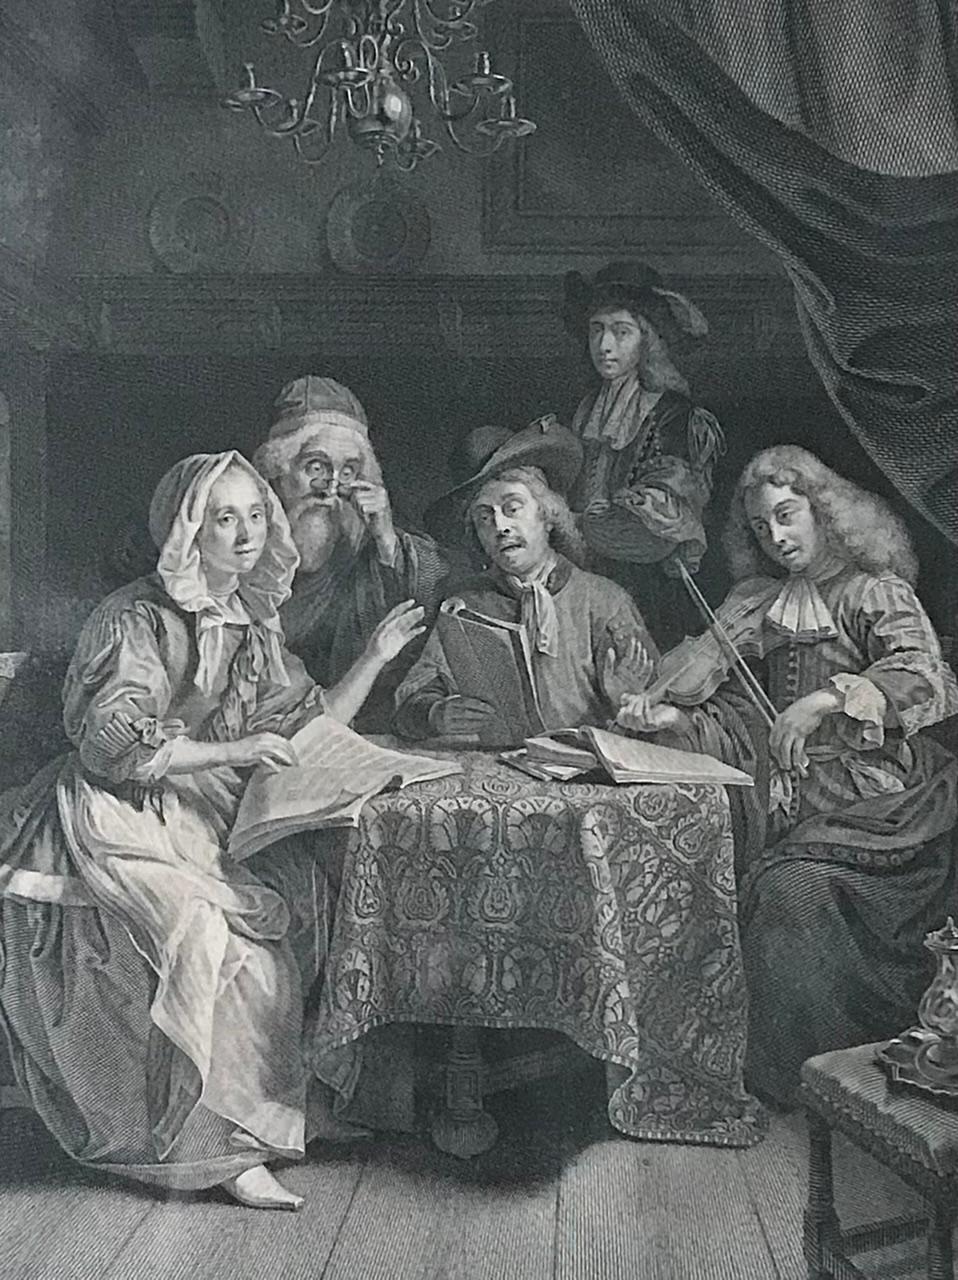 Il s'agit d'une gravure de Johann Georg Wille d'après l'œuvre de Godfried Schalcken. 
 
C'est une scène de genre. Représentation d'une famille assise autour d'une table dans un intérieur typique du XVIIe siècle. Ils lisent et chantent de la